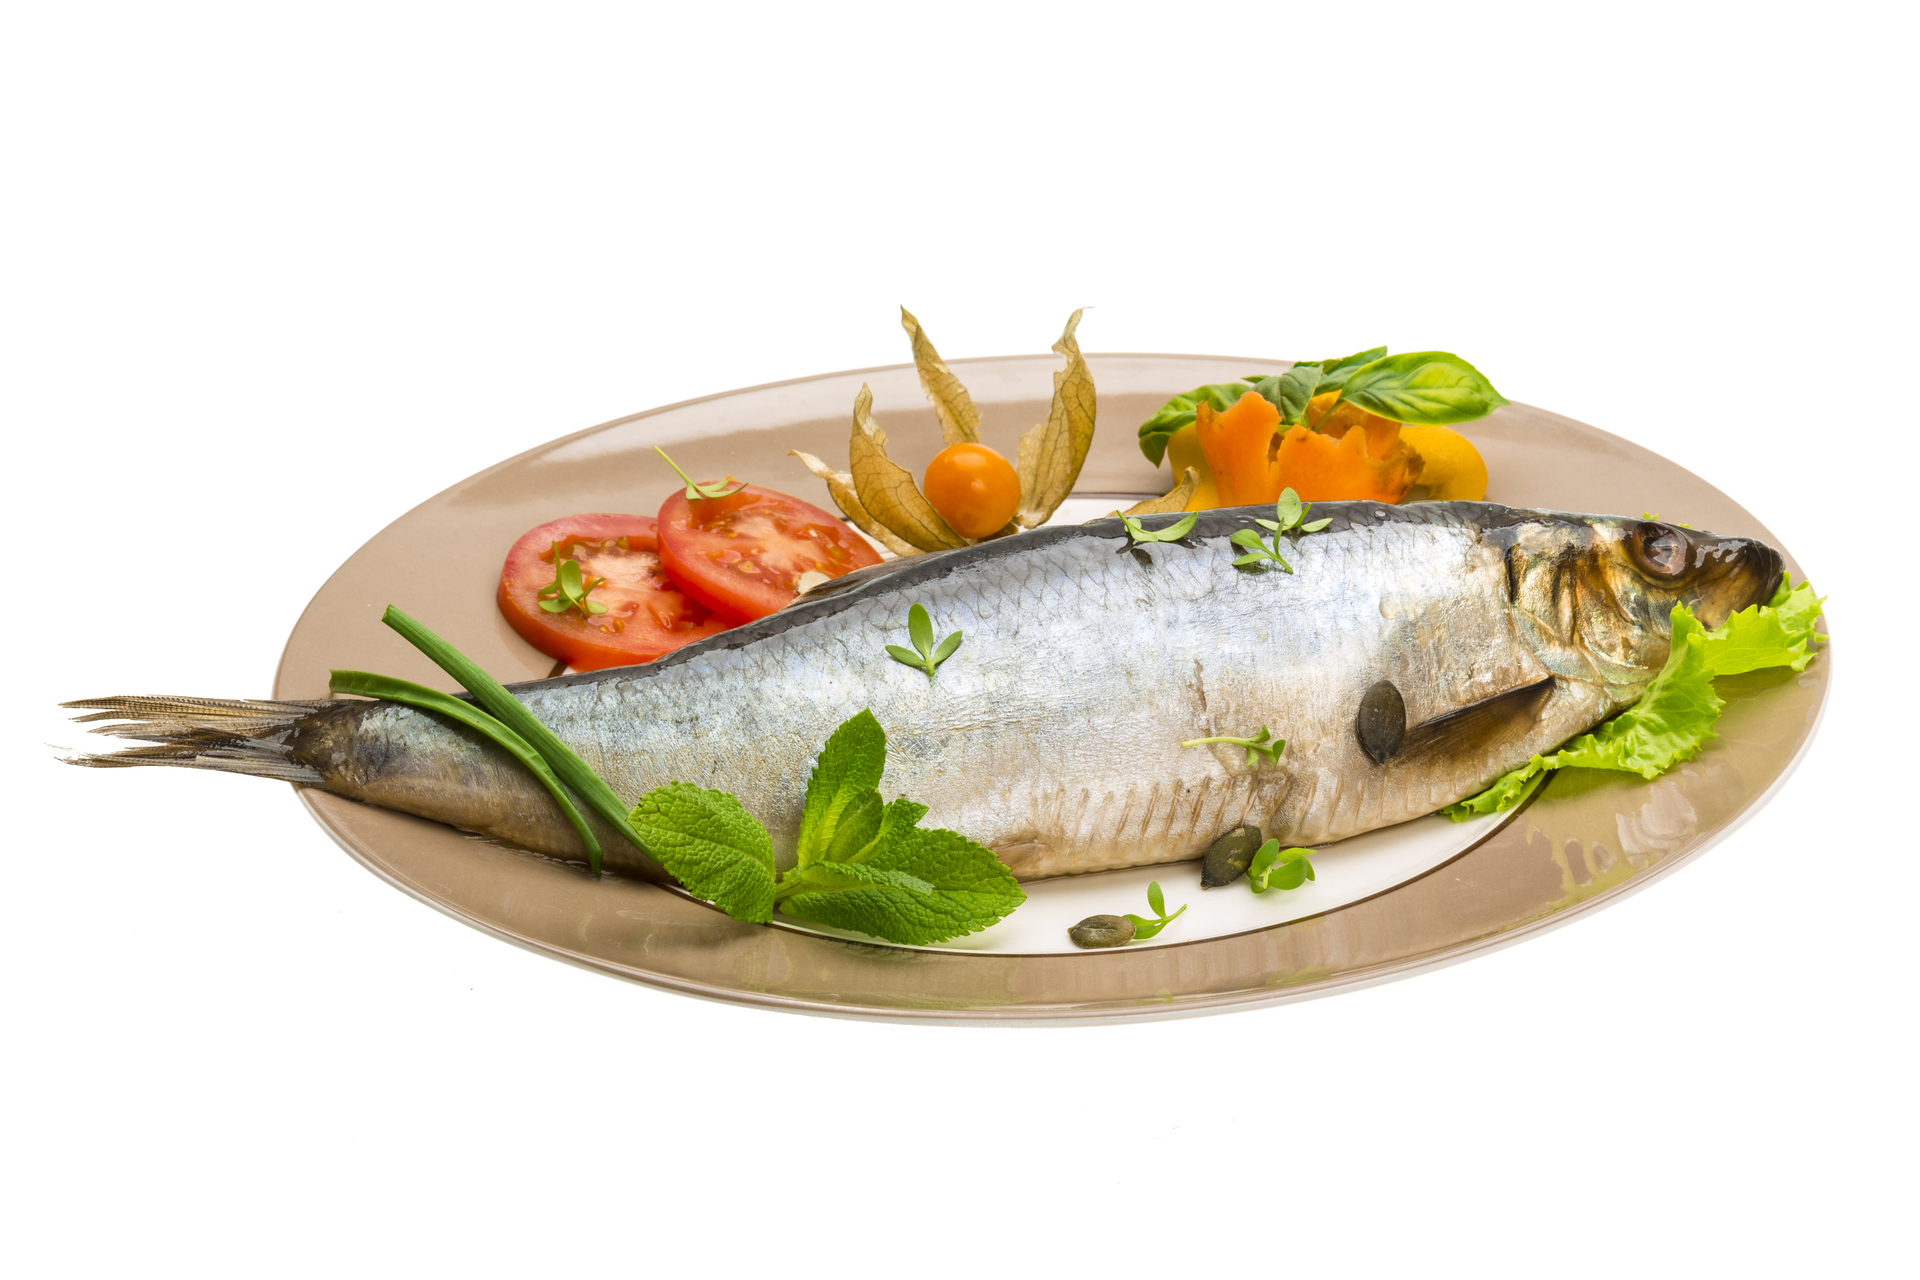 Na tym obrazku widzimy smakowite danie z rybą podaną na białym talerzu z warzywami. Talerz pięknie prezentuje się na białym tle, a ryba i warzywa wyglądają bardzo apetycznie i kusząco. Ryba jest źródłem białka i cennych kwasów tłuszczowych, natomiast warzywa dostarczają organizmowi cennych składników odżywczych, takich jak witaminy i błonnik. Ta grafika doskonale oddaje smak i styl kuchni, która łączy w sobie wartości odżywcze ryb i warzyw. Przeczytaj artykuł i poznaj więcej przepisów na pyszne i zdrowe dania z rybą i warzywami, które pomogą Ci zaspokoić głód i dostarczą organizmowi niezbędne składniki odżywcze. Daj sobie szansę na zdrowie i lepsze samopoczucie, aby móc cieszyć się życiem pełnym energii i dobrego samopoczucia.